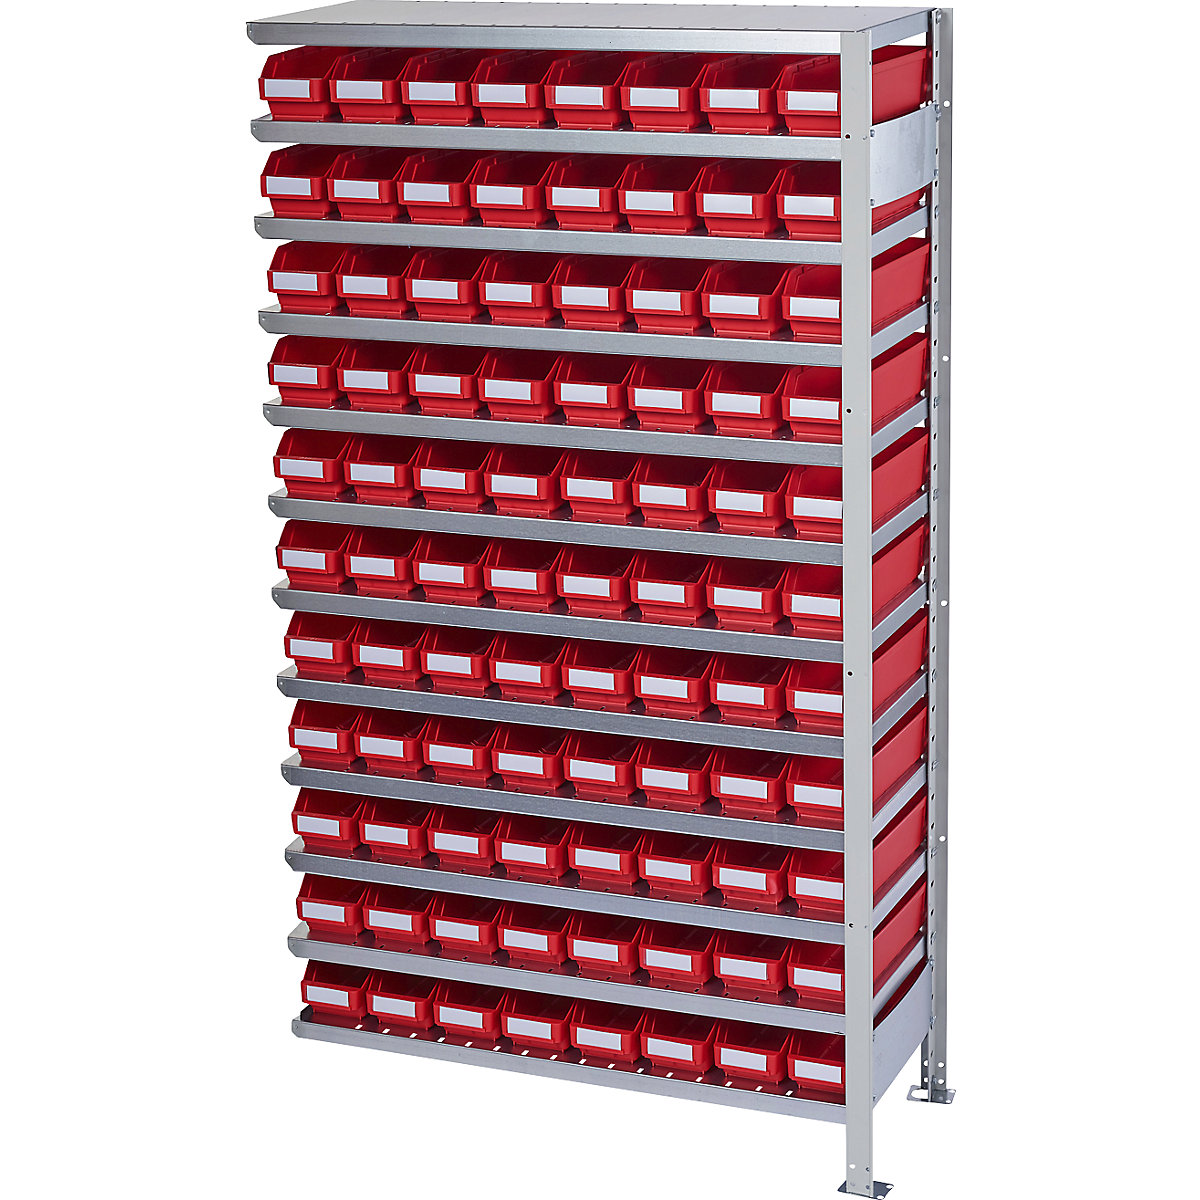 Összedugaszolós állvány dobozokkal – STEMO, állványmagasság 1790 mm, bővítő állvány, 300 mm mély, 88 piros doboz-28